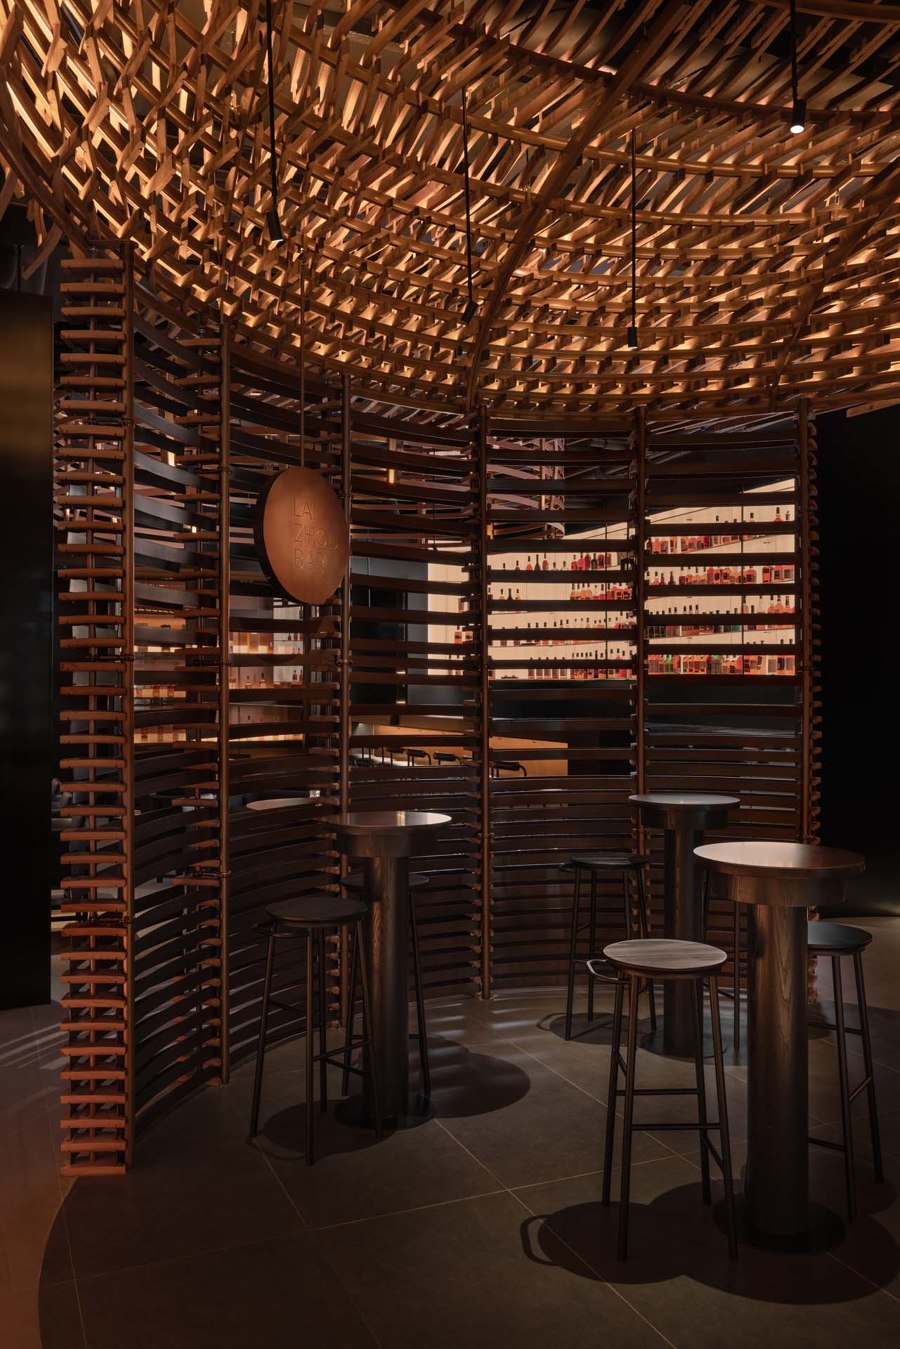 Laizhou Bar von RooMoo Design Studio | Bar-Interieurs